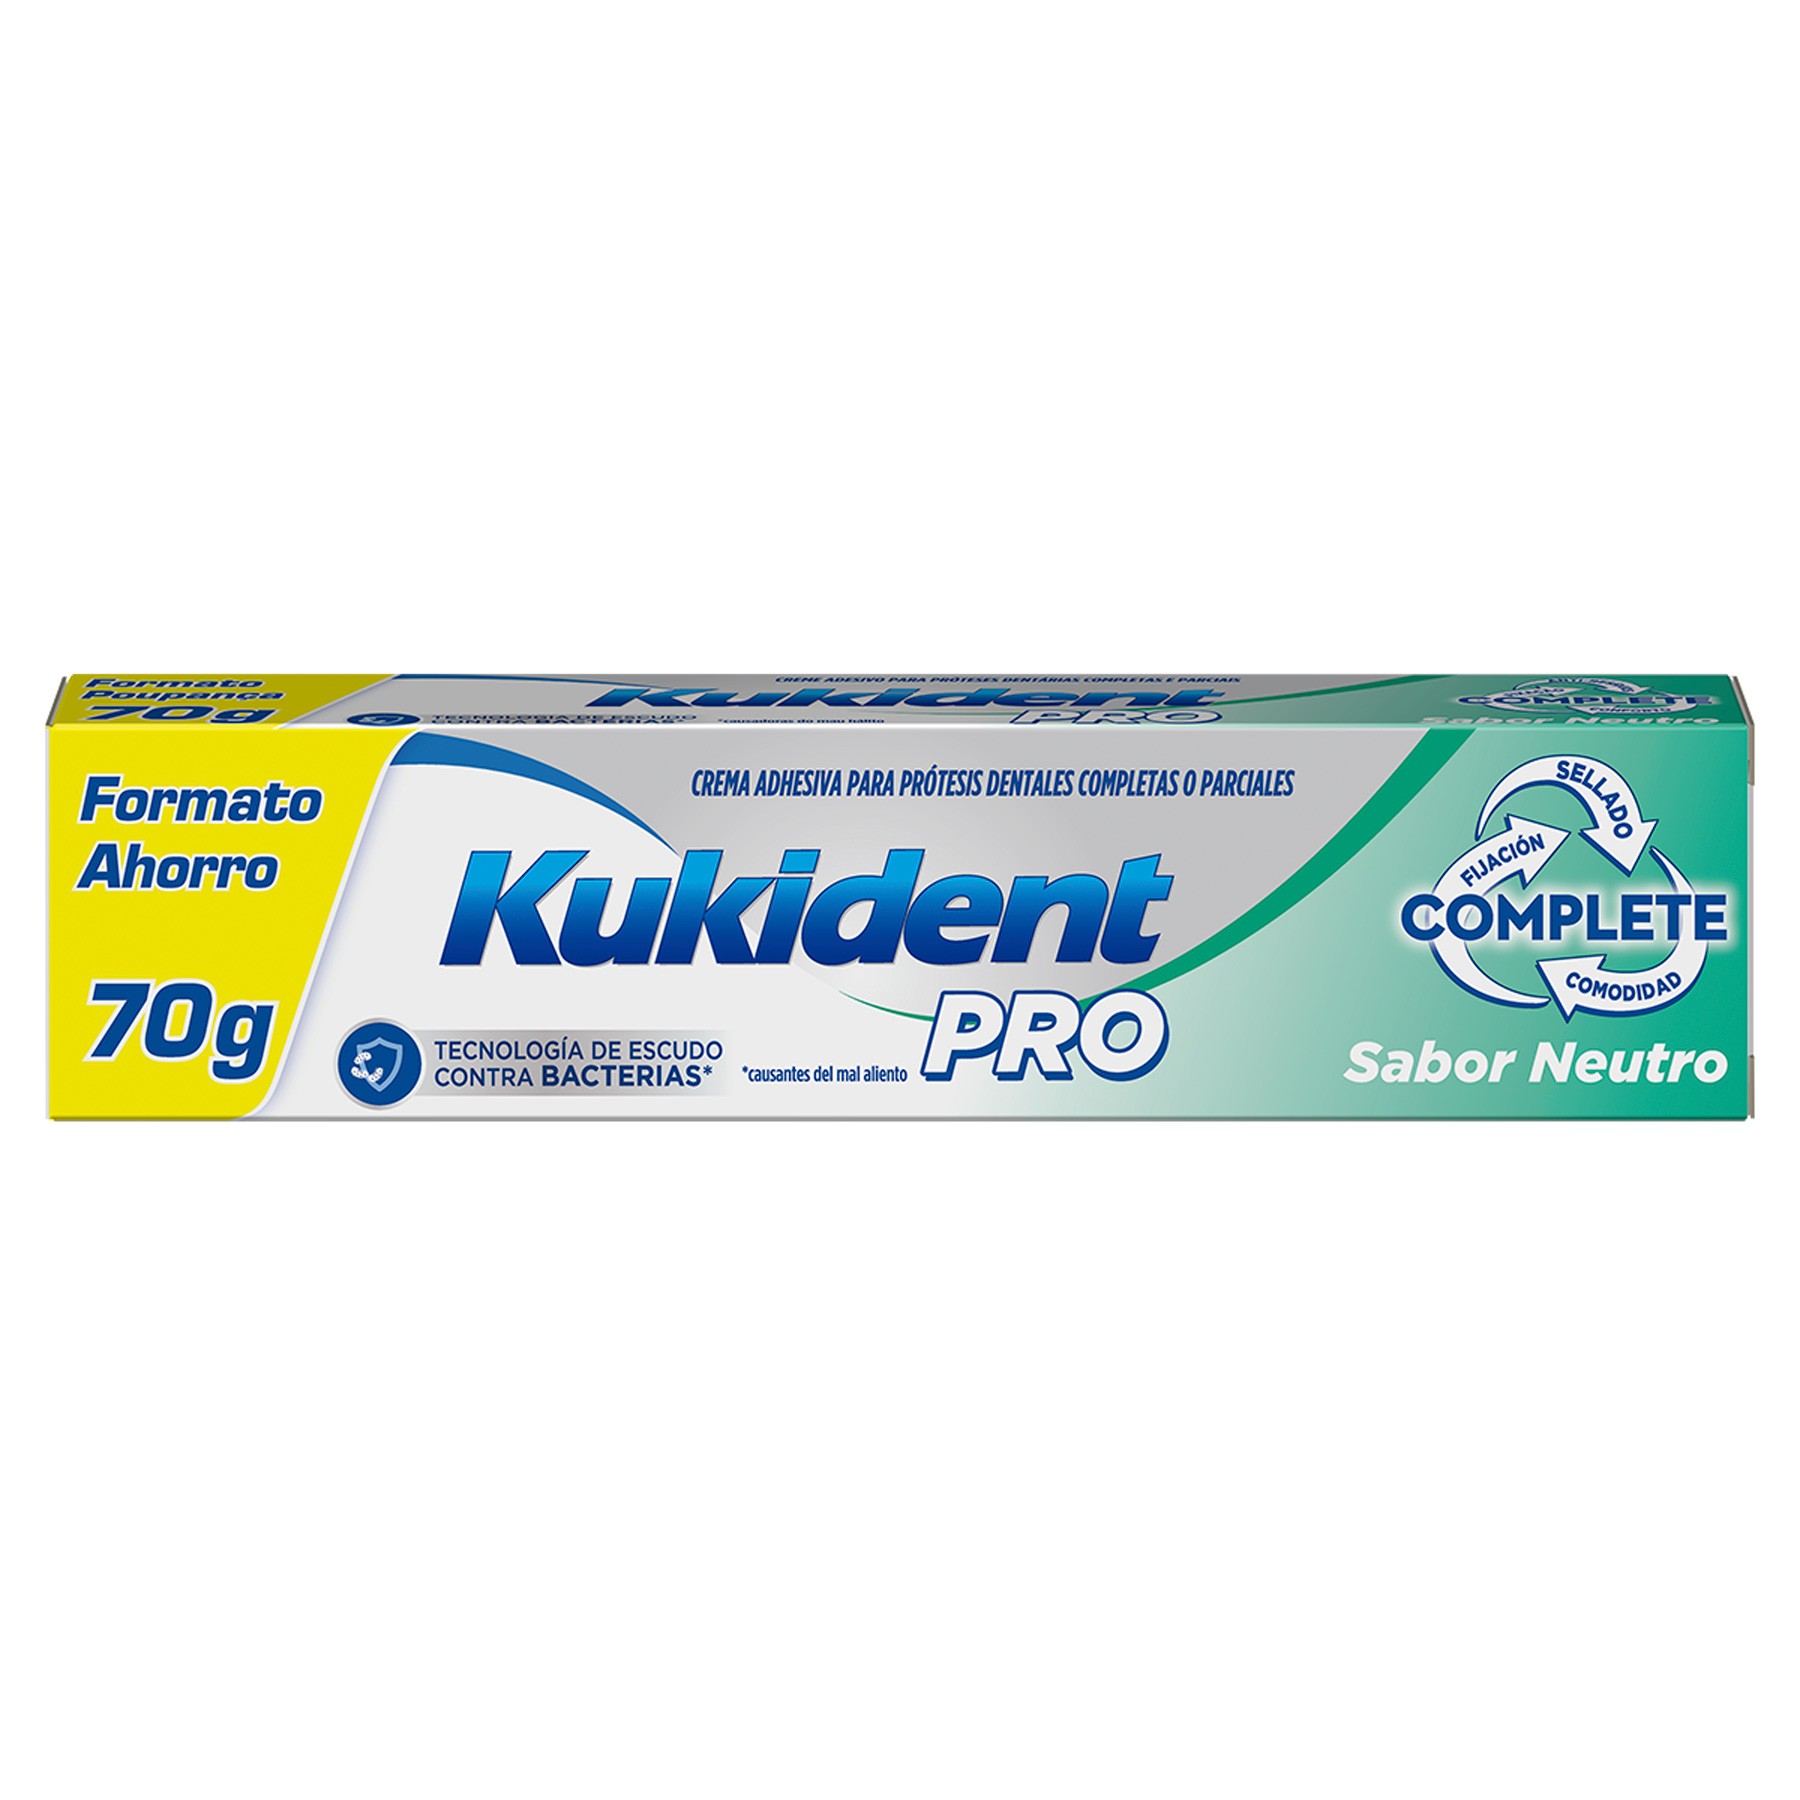 Kukident pack complete crema adhesiva neutro 3x70g